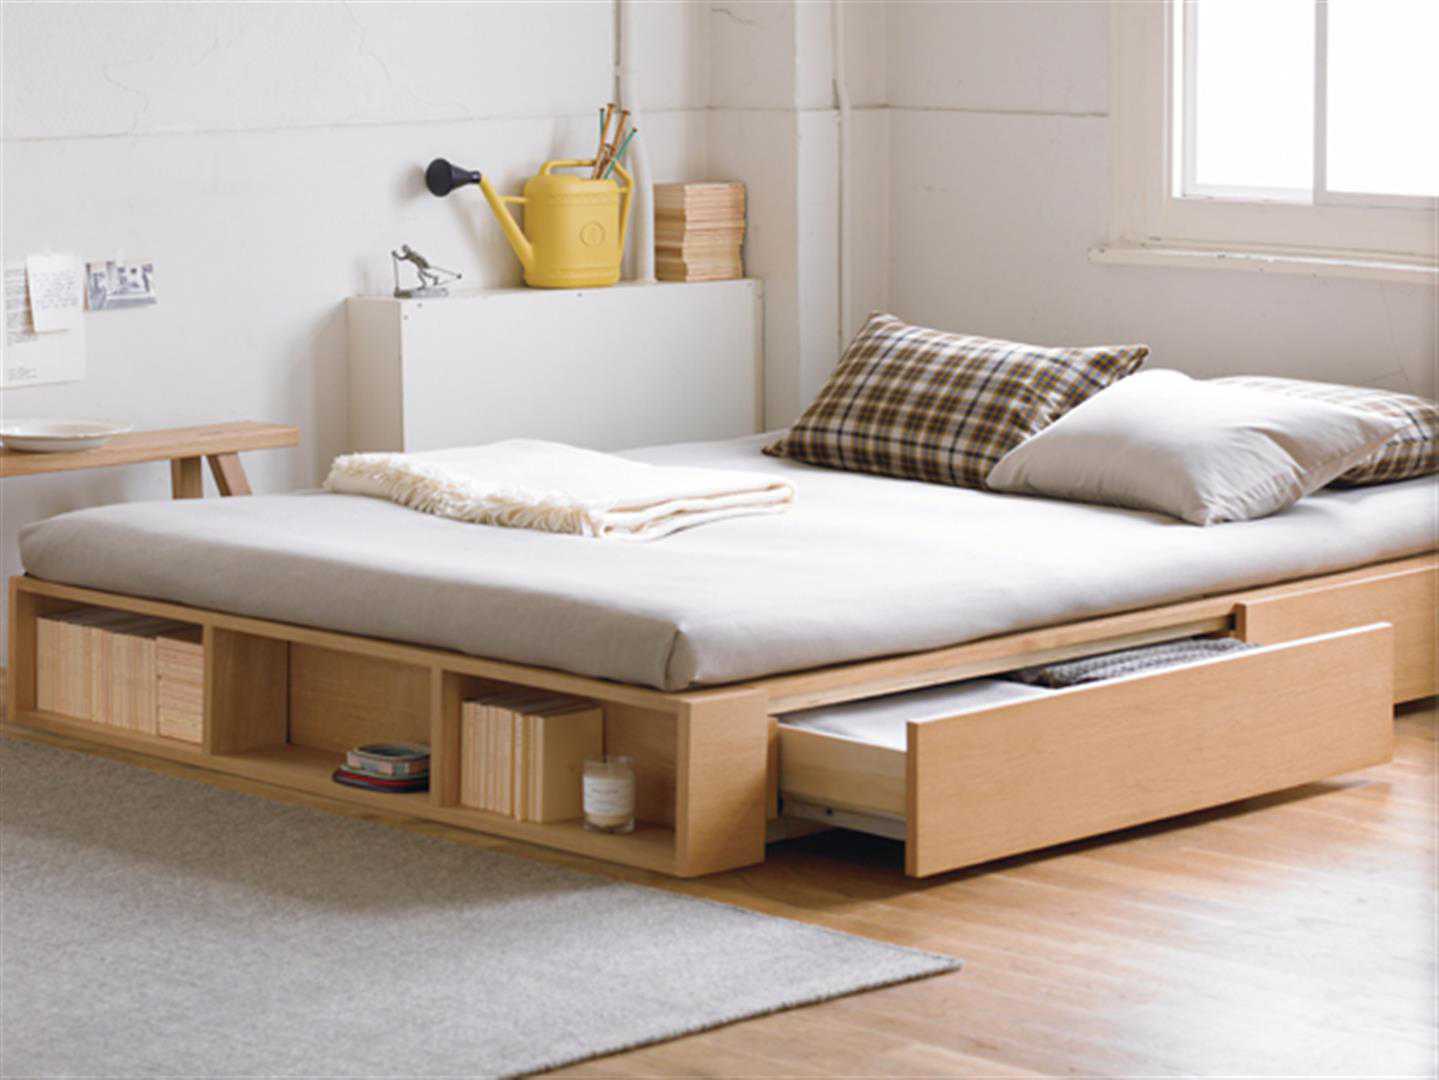 Với giường tủ gỗ công nghiệp thông minh, không chỉ giúp tiết kiệm diện tích mà còn giữ nguyên vẹn không gian bố trí nội thất của căn phòng. Sản phẩm được thiết kế chắc chắn, đa chức năng và với kiểu dáng hiện đại, phù hợp với nhiều mẫu phòng ngủ. Giường tủ gỗ thông minh là giải pháp thông minh giúp cho căn phòng của bạn trở nên tiện ích và sang trọng.